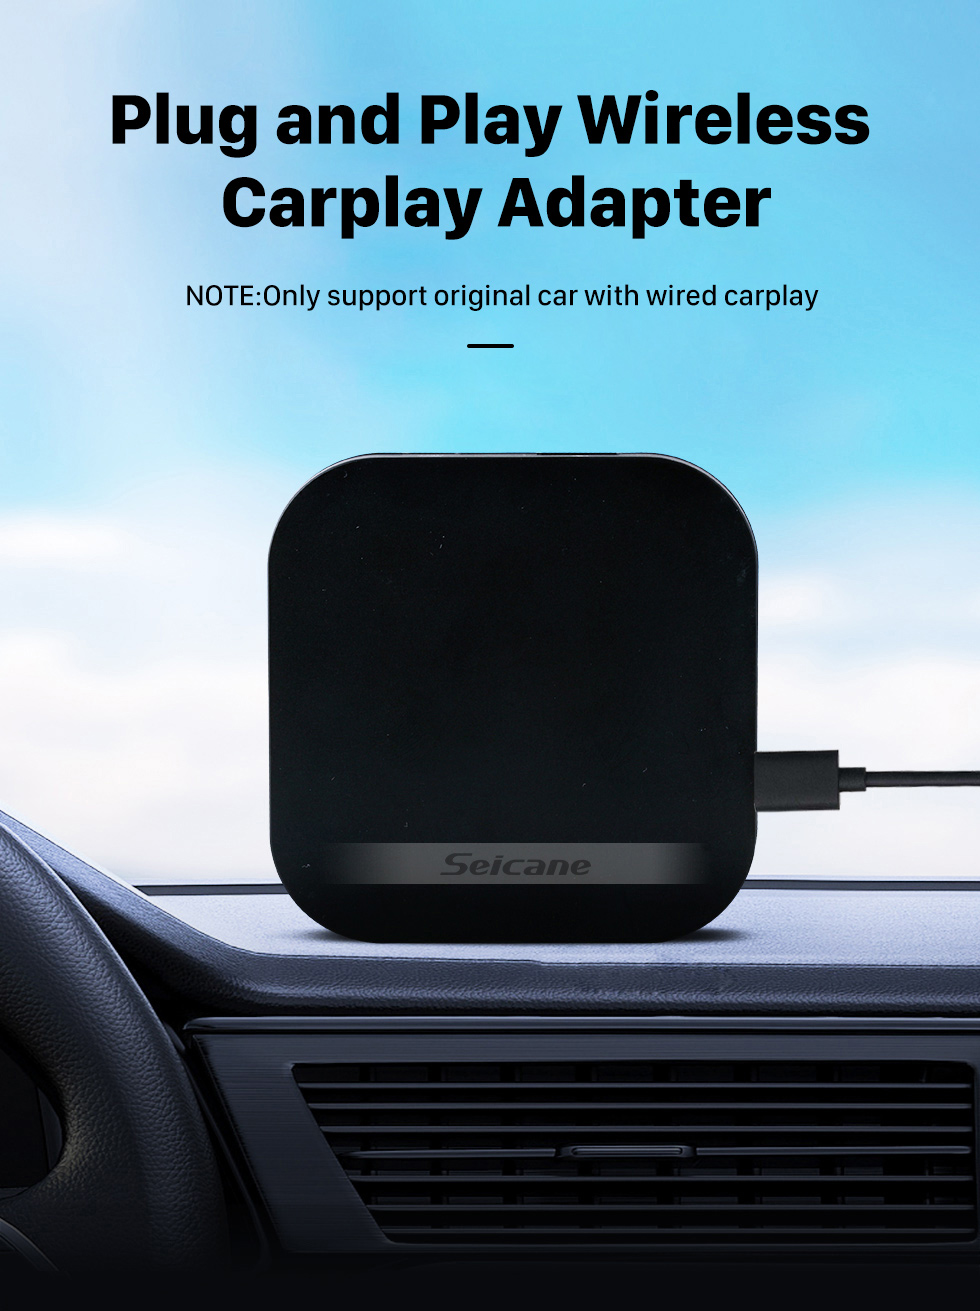 Seicane Adaptateur Carplay sans fil Plug and Play pour prise en charge Carplay filaire d'usine BWM Benz Audi VW